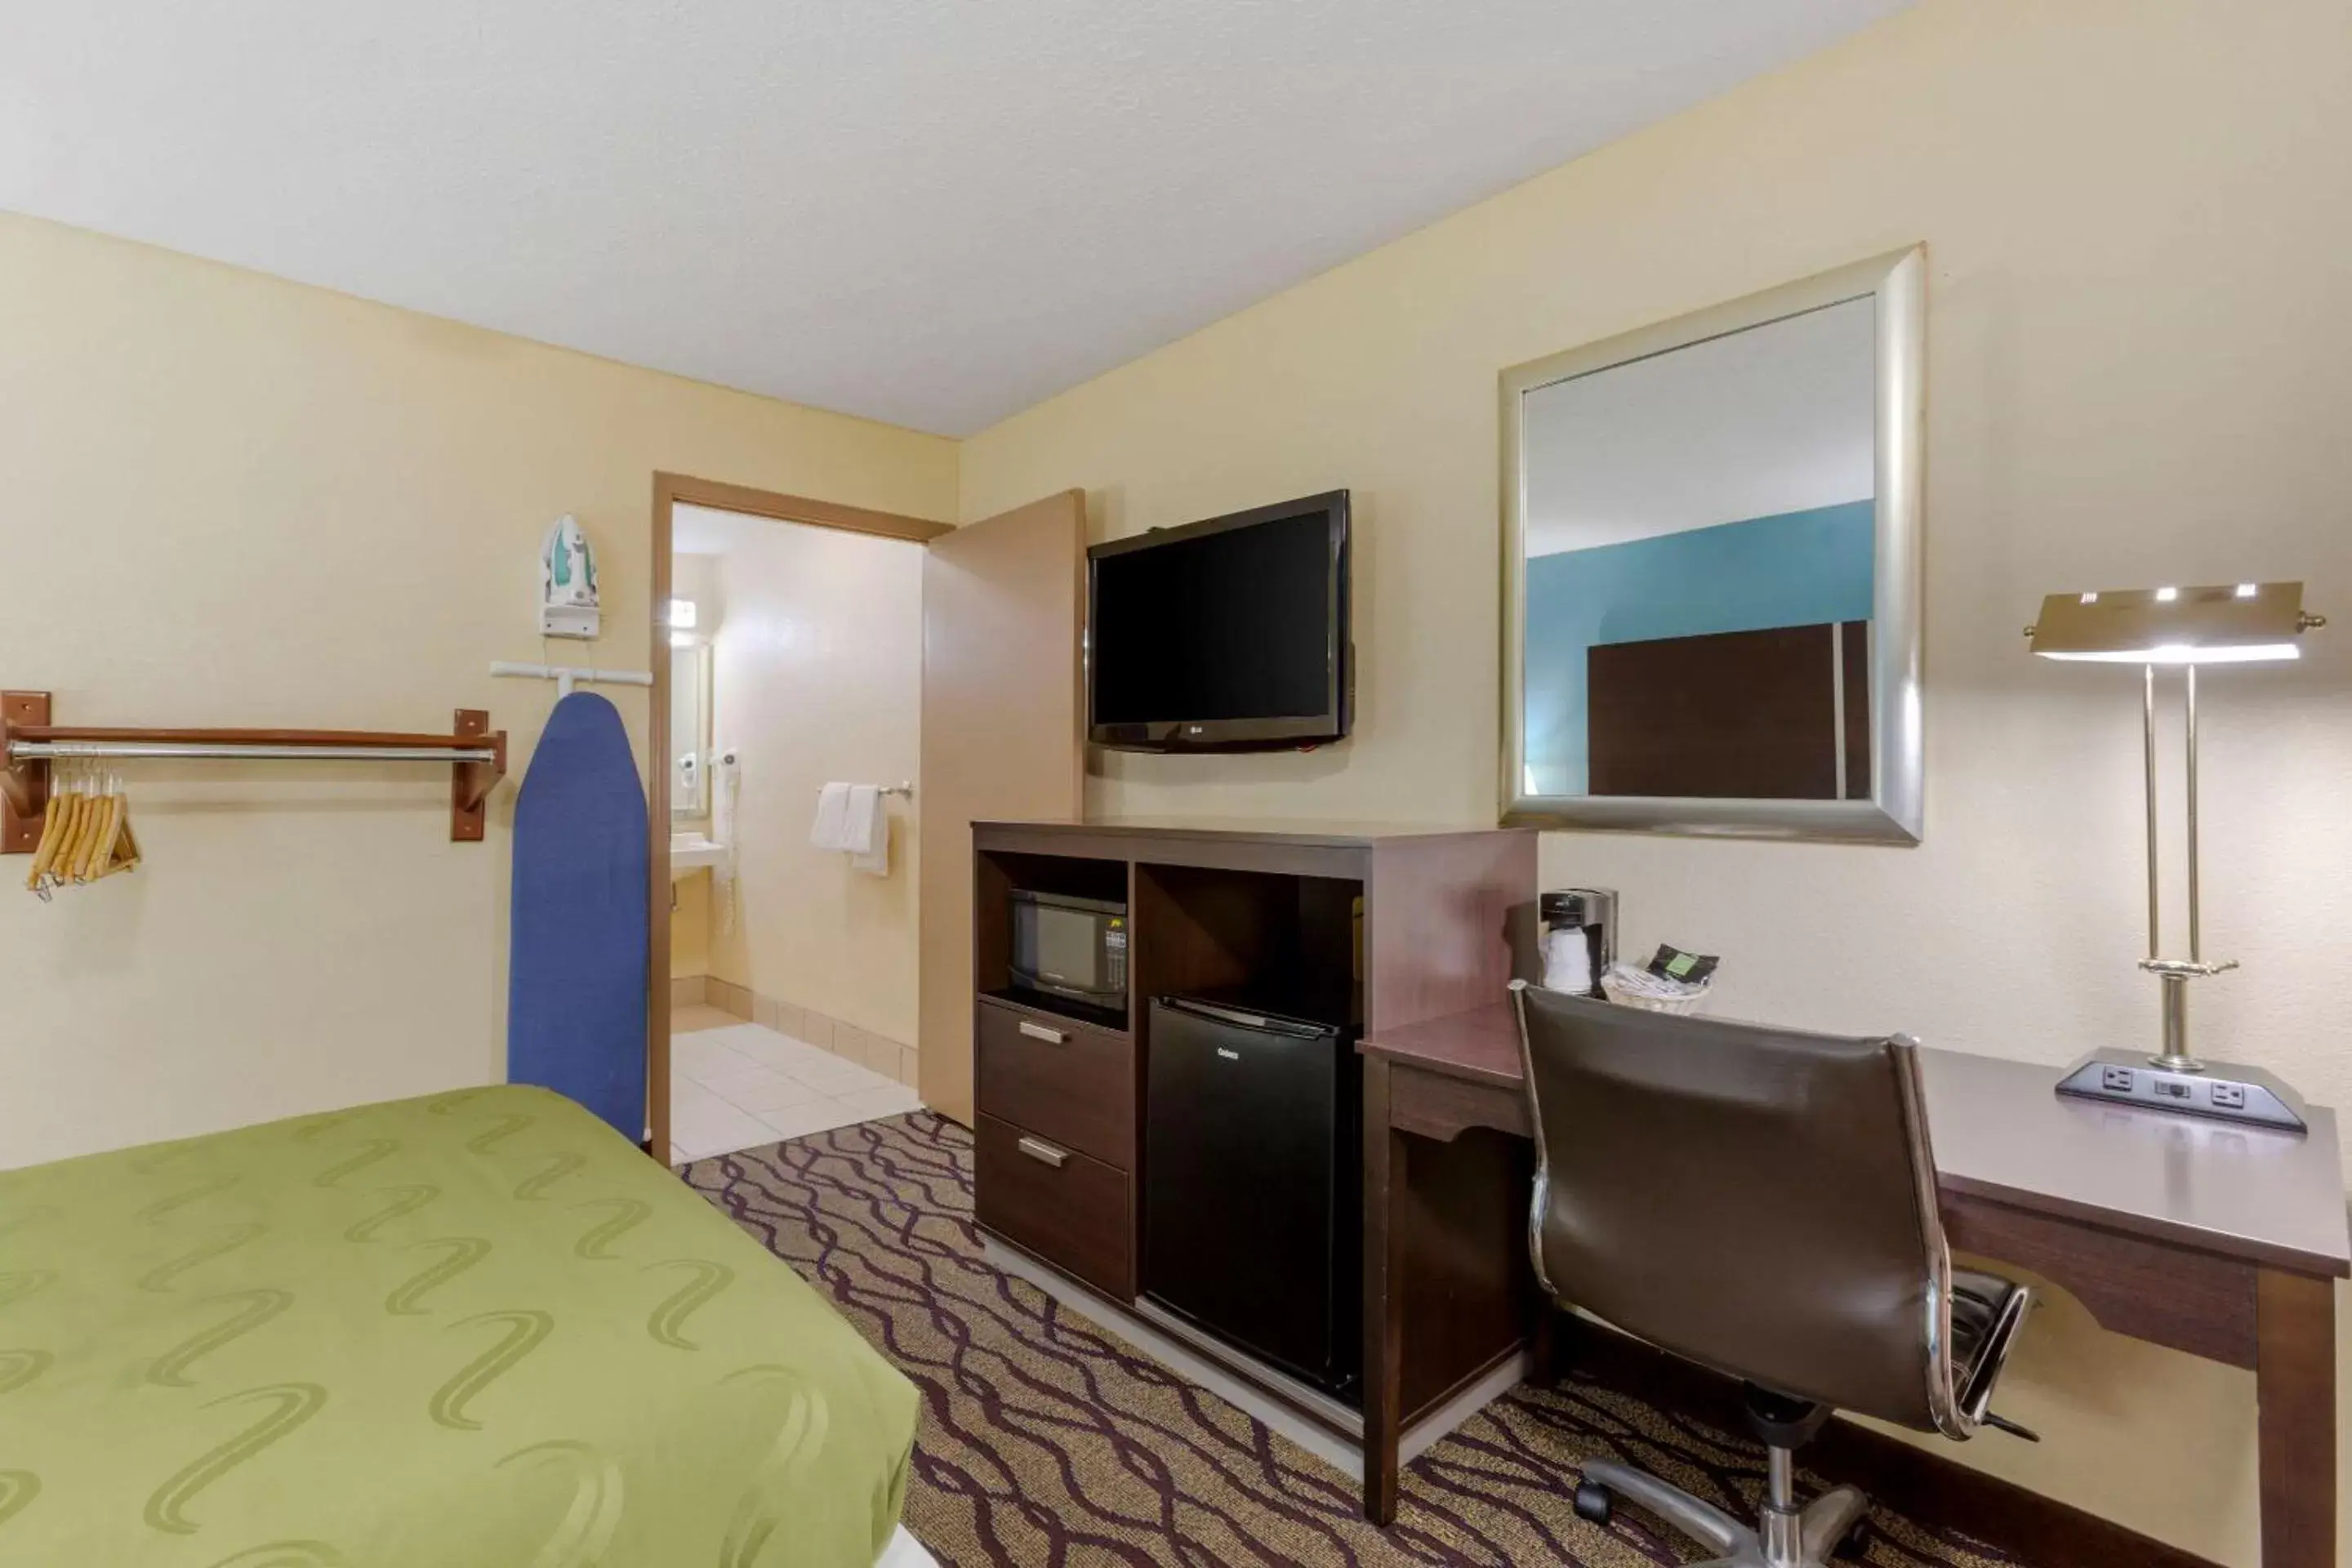 Bedroom, TV/Entertainment Center in Quality Inn Columbus-East